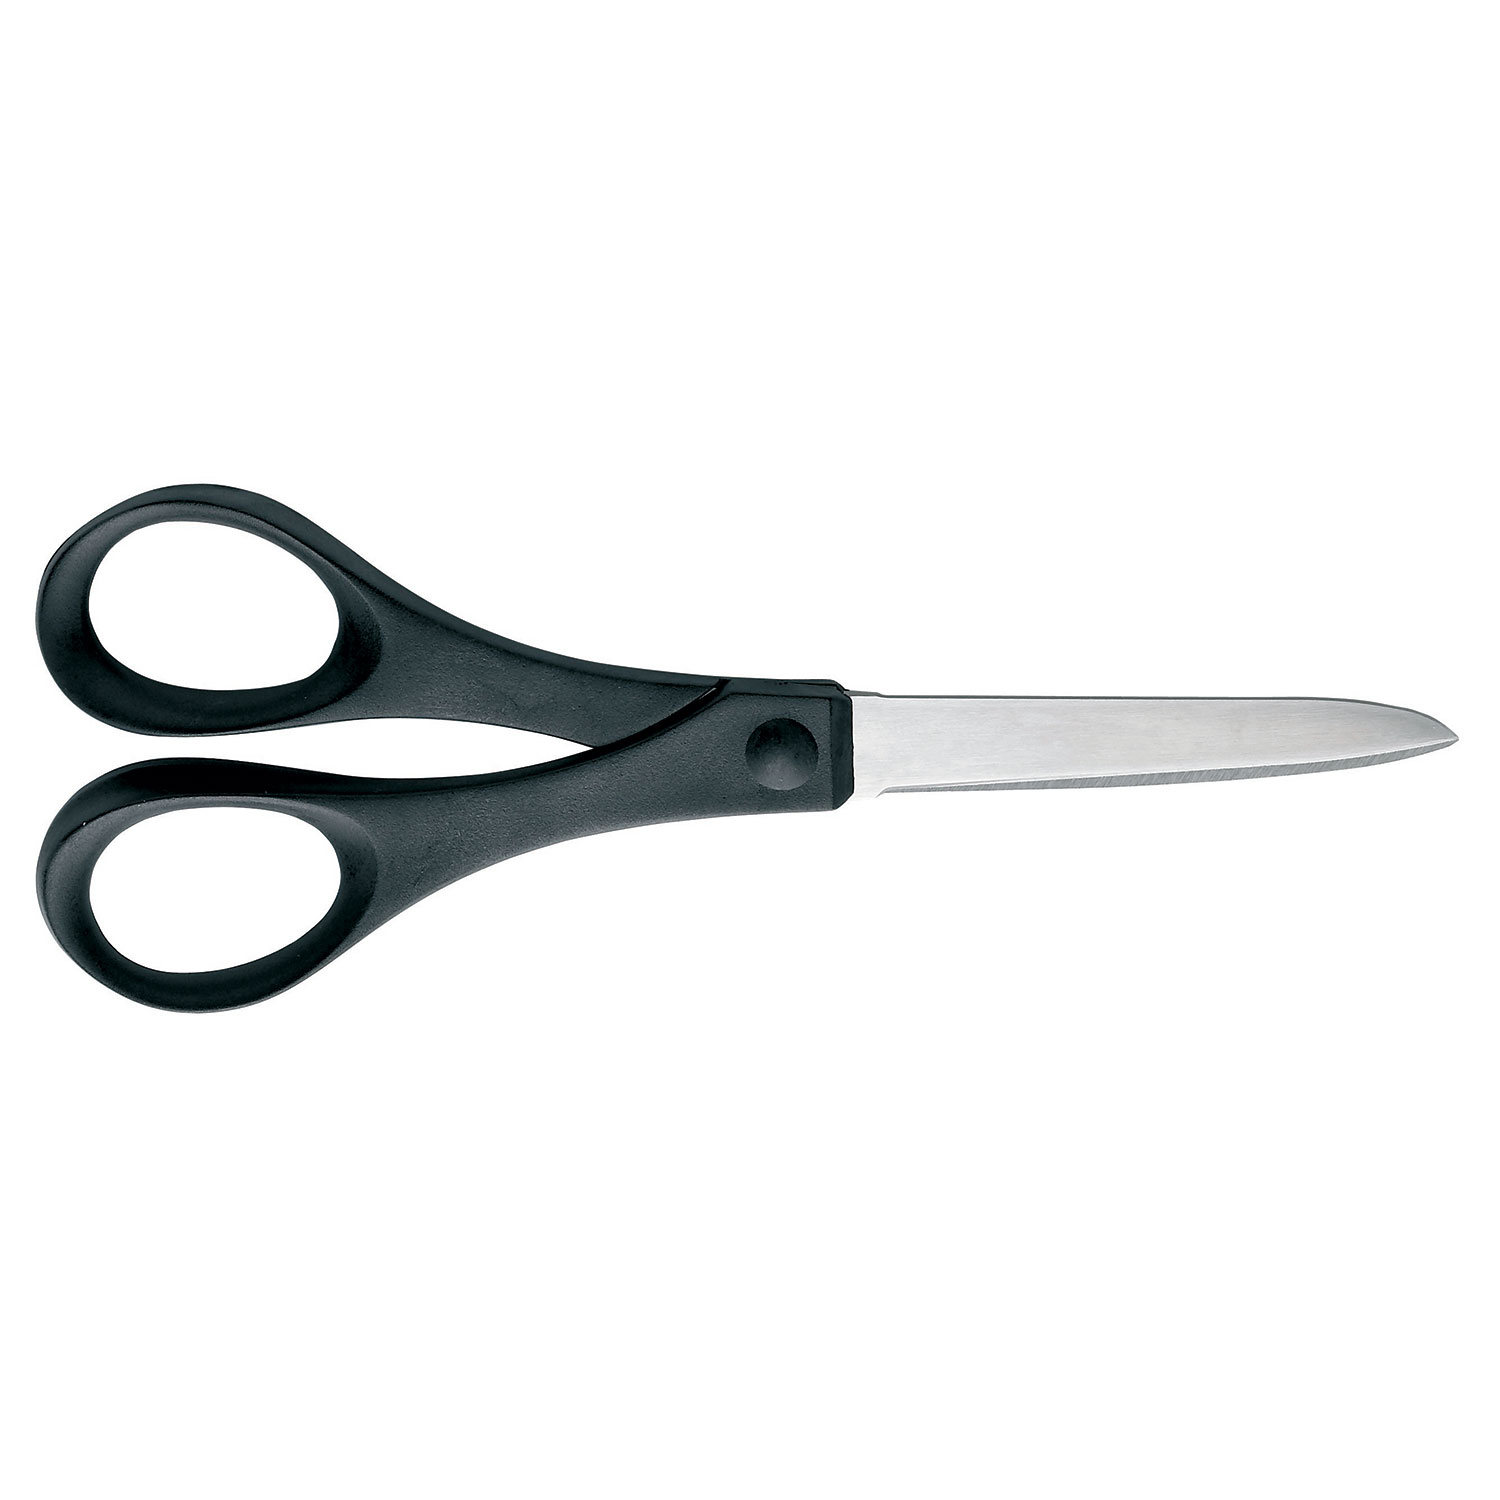 Fiskars Essential Paper Scissors 18 cm - Scissors Black - 1023818